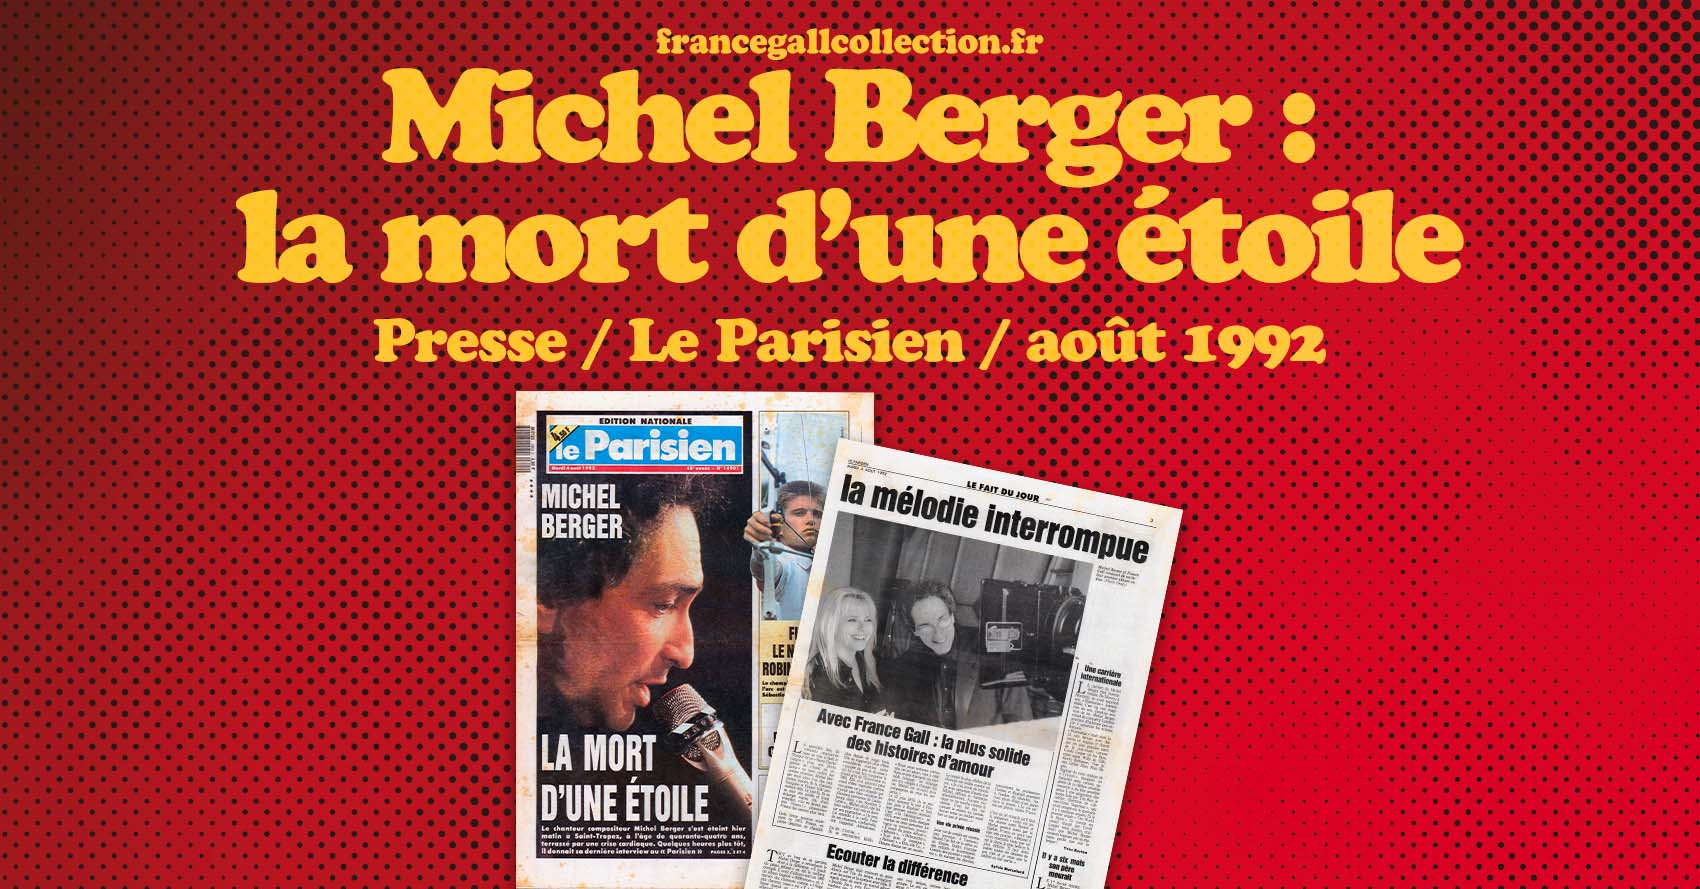 Le chanteur compositeur Michel Berger s'est éteint hier matin à Saint-Tropez, à l'âge de quarante-quatre ans, terrassé par une crise cardiaque.